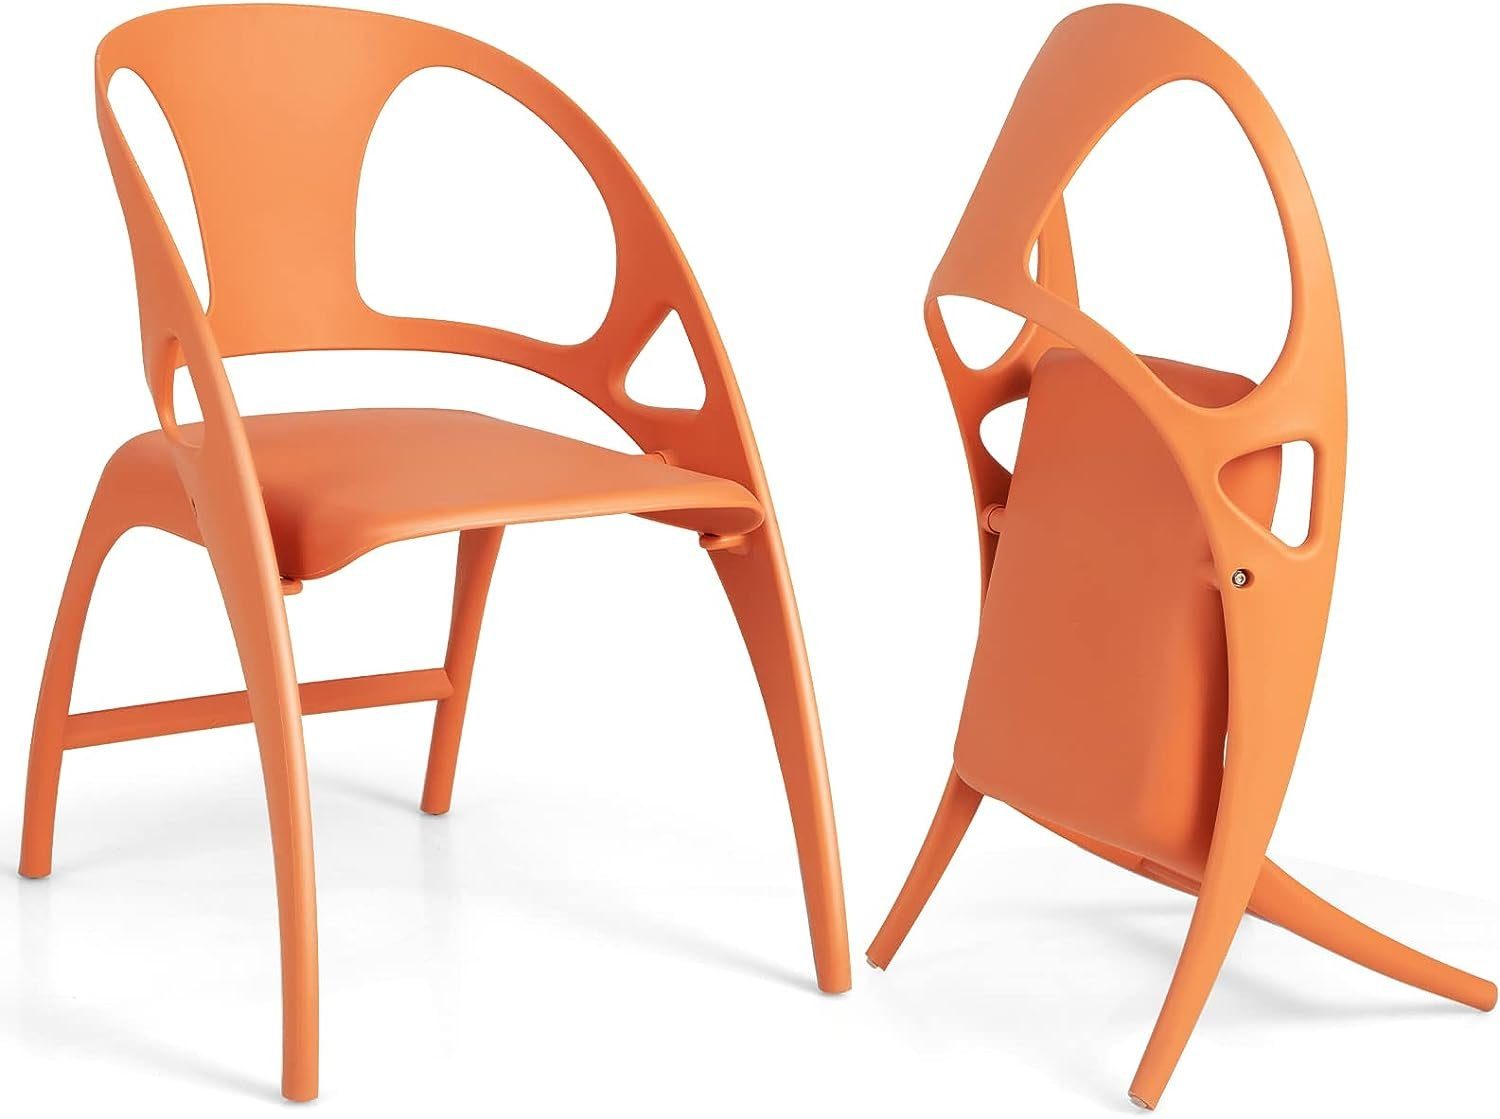 KOMFOTTEU Belastbar orange Gartenstuhl mit 150kg (2er-Set), Kunststoffstuhl Rückenlehne,